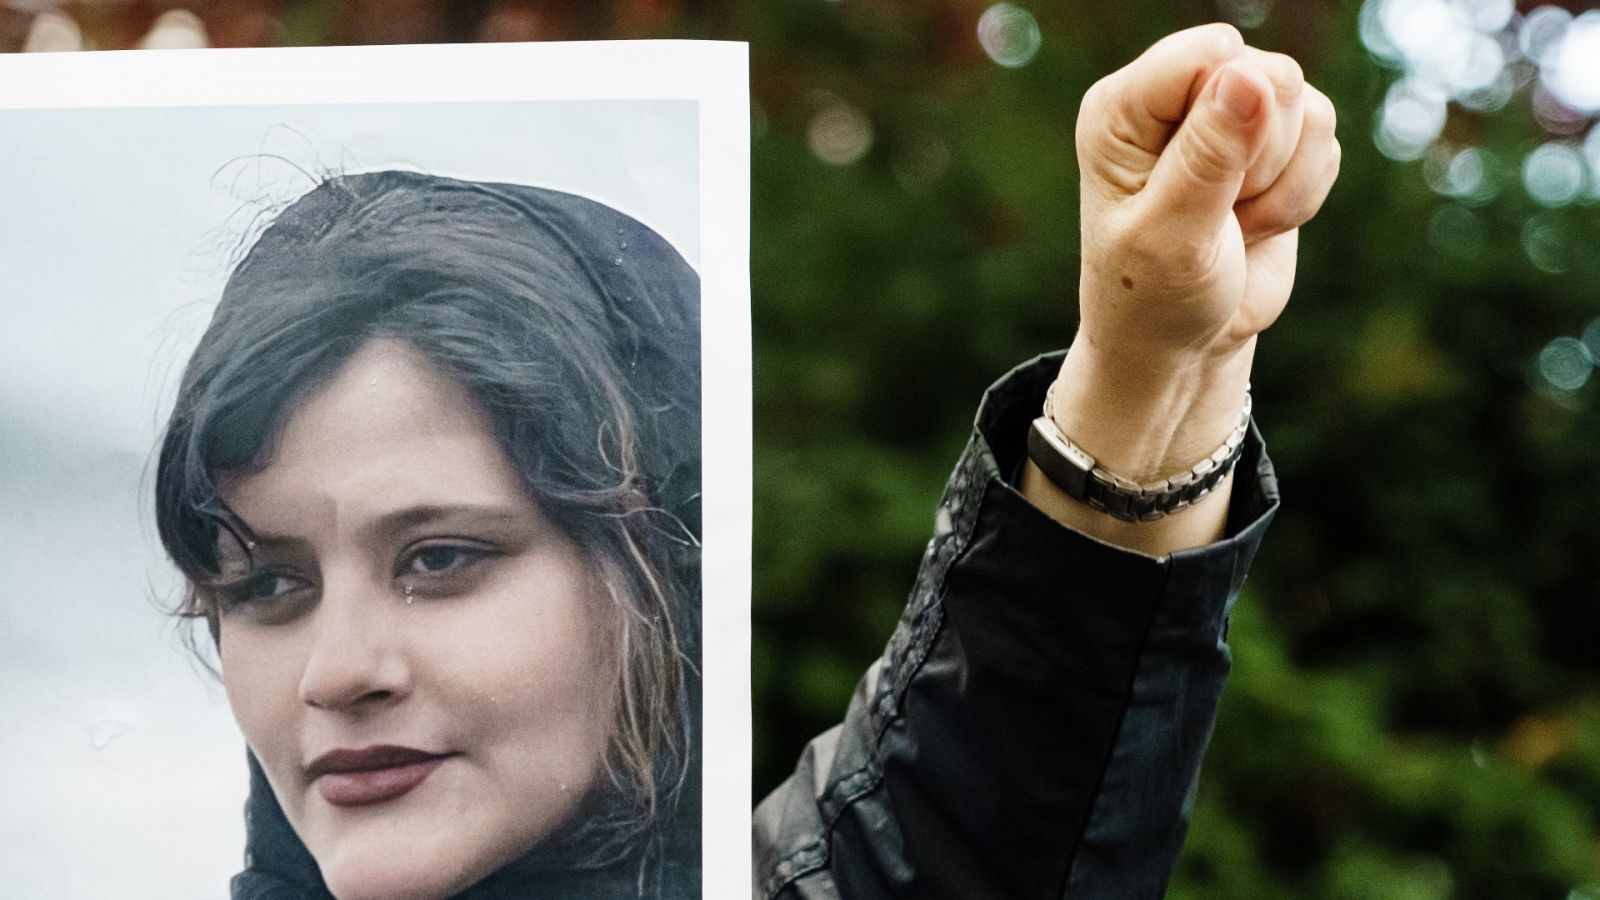 Las Mañanas de RNE con Íñigo Alfonso - Ola de protestas en Irán tras la muerte de Mahsa Amini: "No creo que nada cambie porque este movimiento no es nuevo y llevó a más represión" - Escuchar ahora